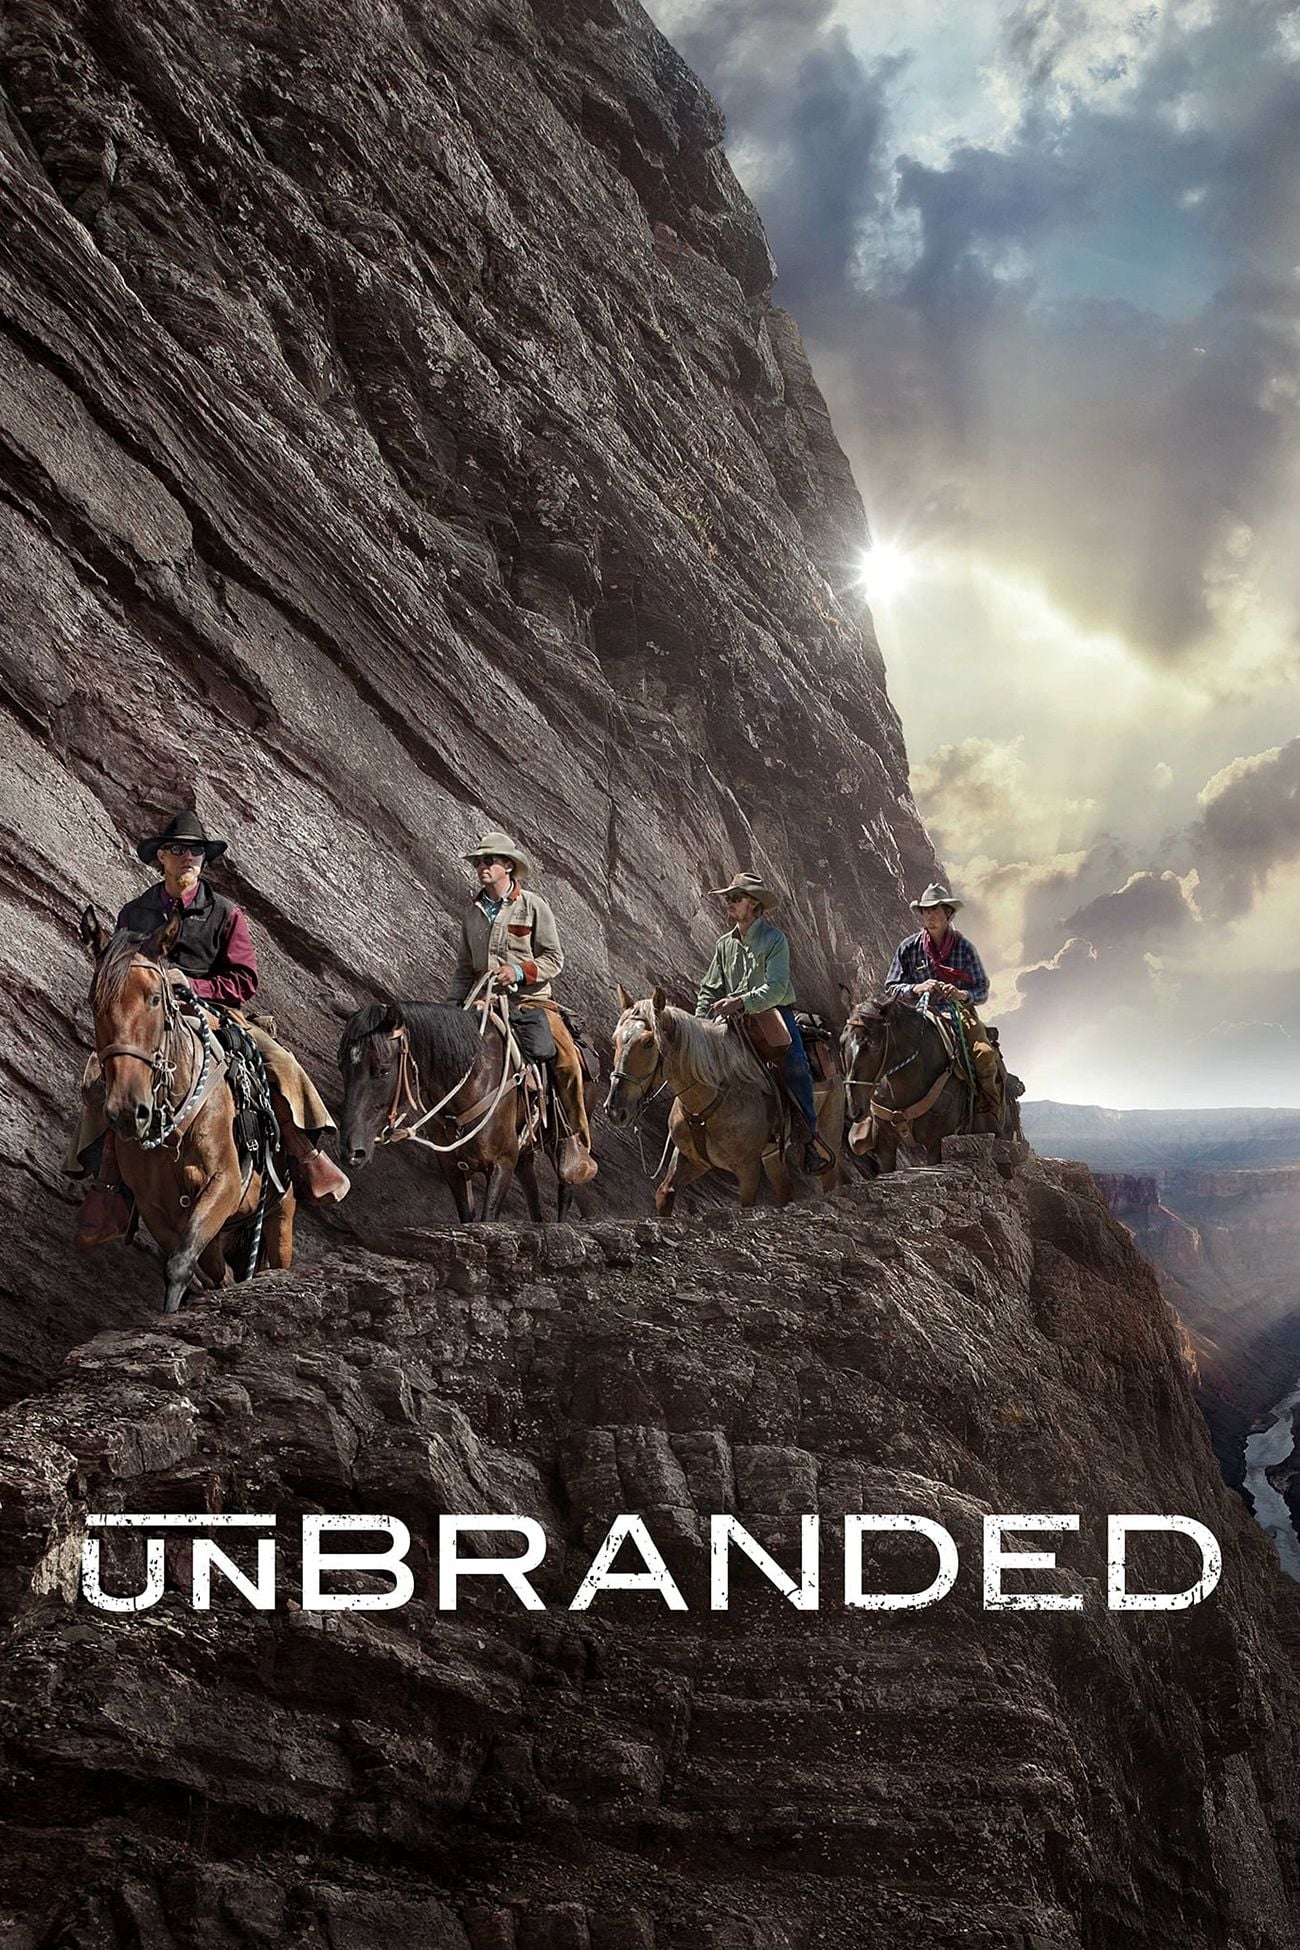 Unbranded (Mustangs sin marcar) (2015)